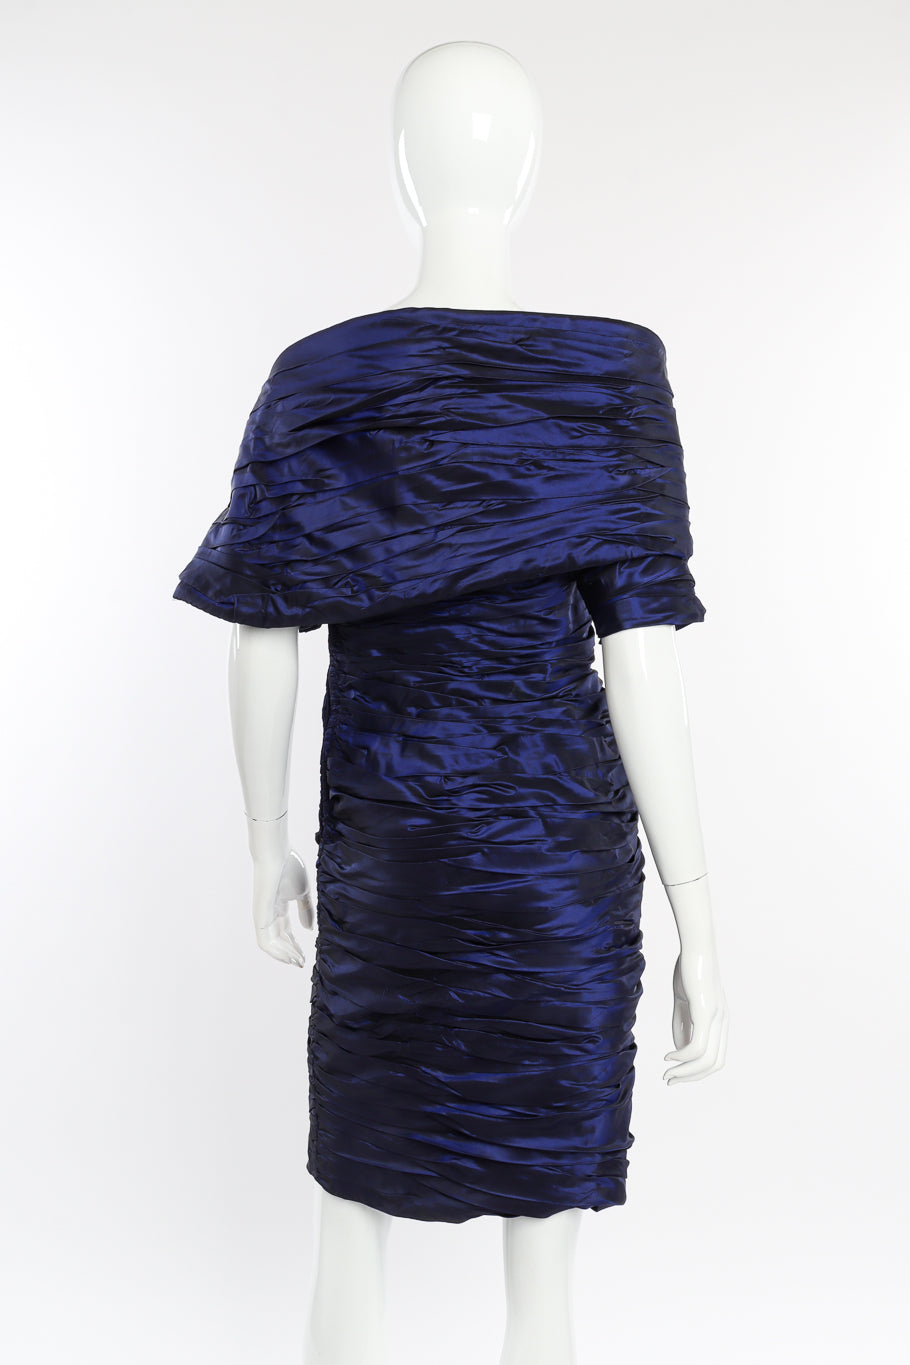 Vintage Jacqueline de Ribes Taffeta Wrap Dress back on mannequin @recessla